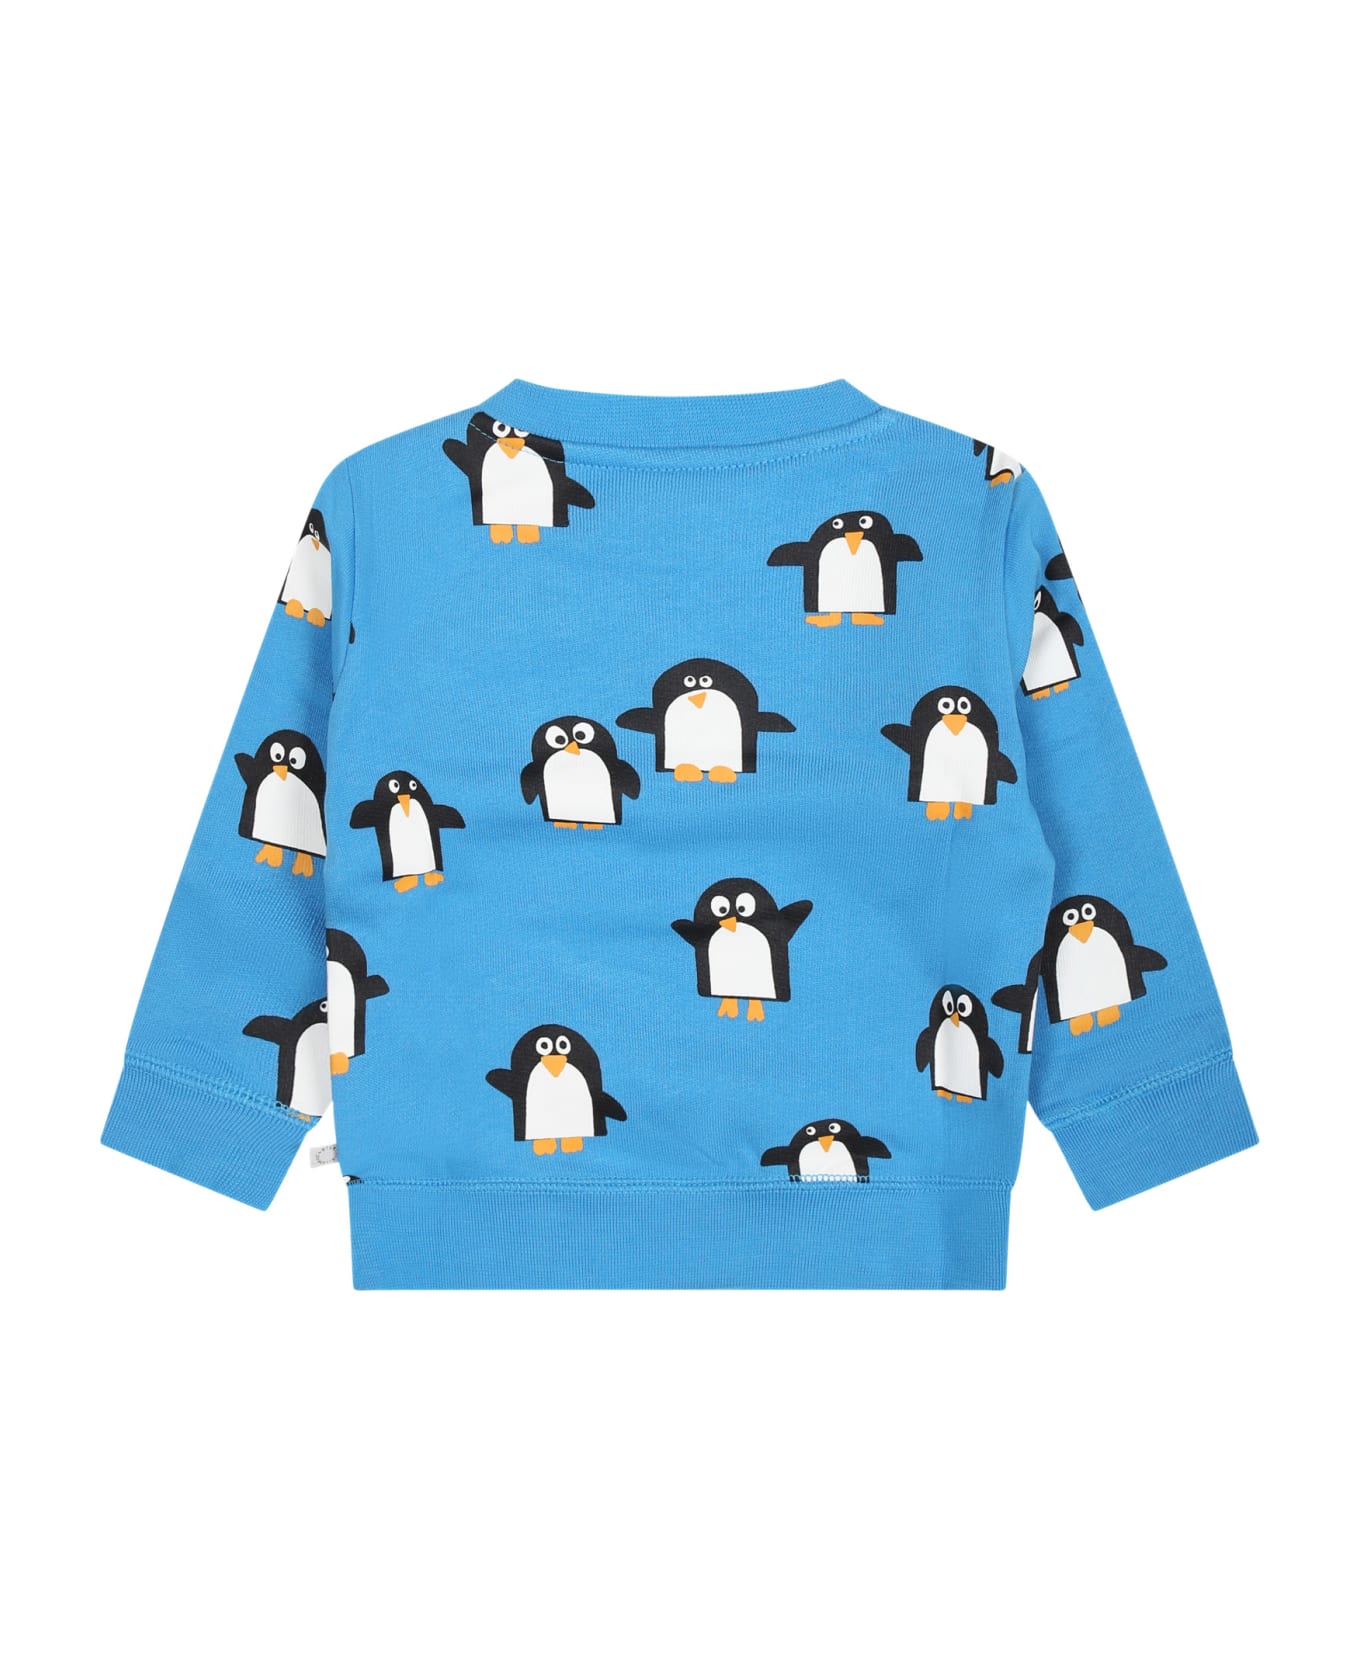 Stella McCartney Kids Light Blue Sweatshirt For Baby Boy With All-over Penguins - Light Blue ニットウェア＆スウェットシャツ